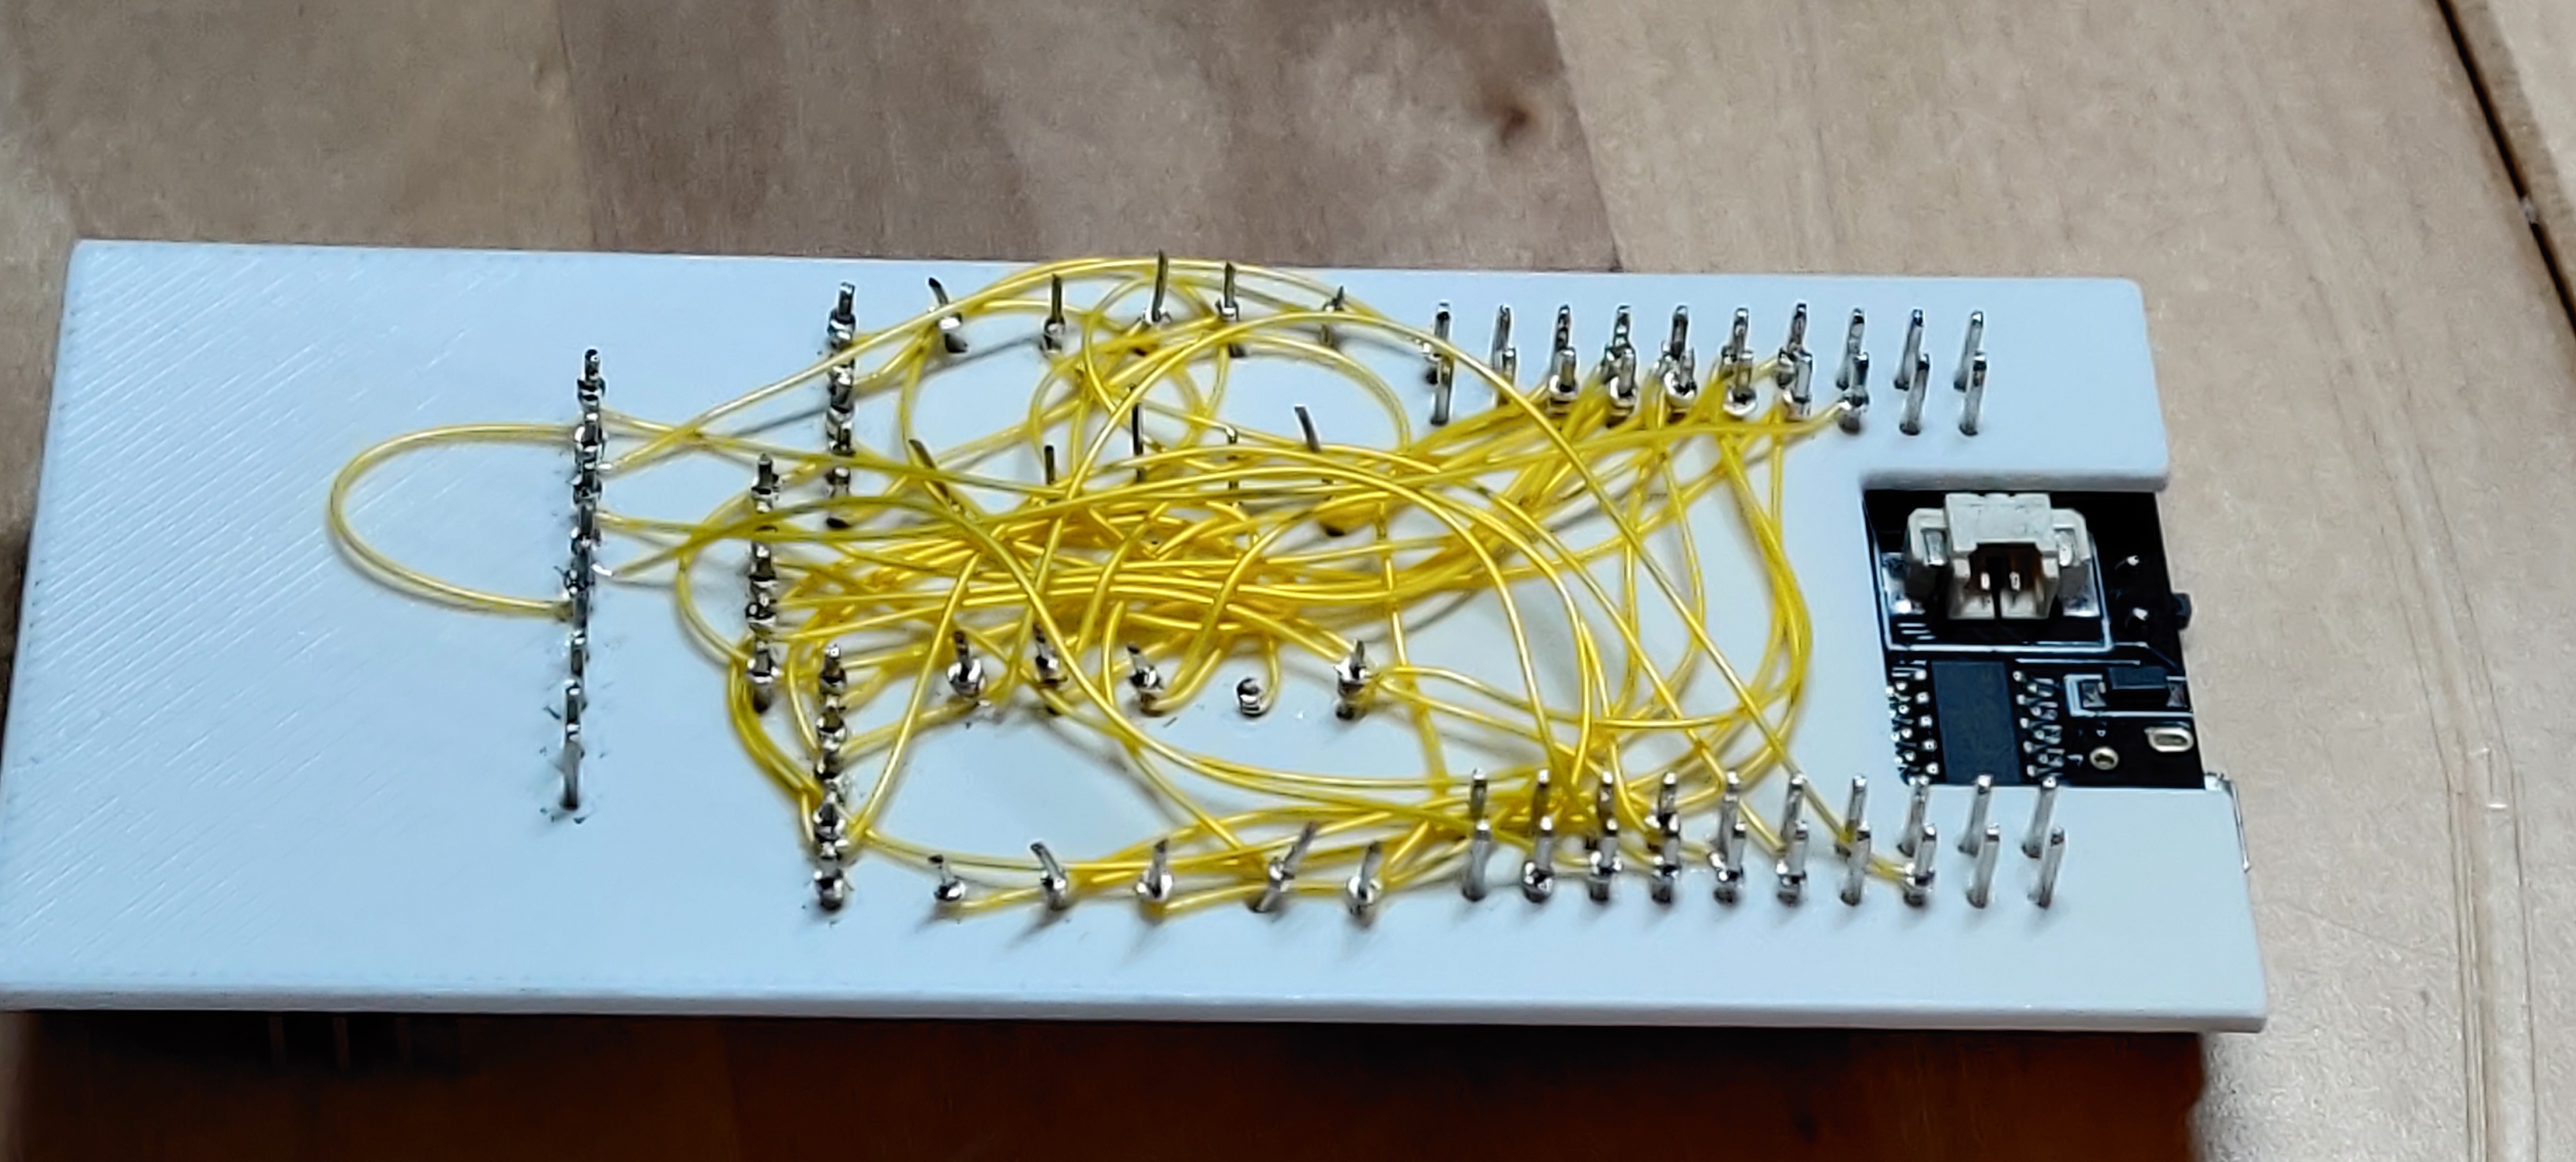 retro della basetta, un sacco di fili elettrici isolati in
giallo collegano i piedini